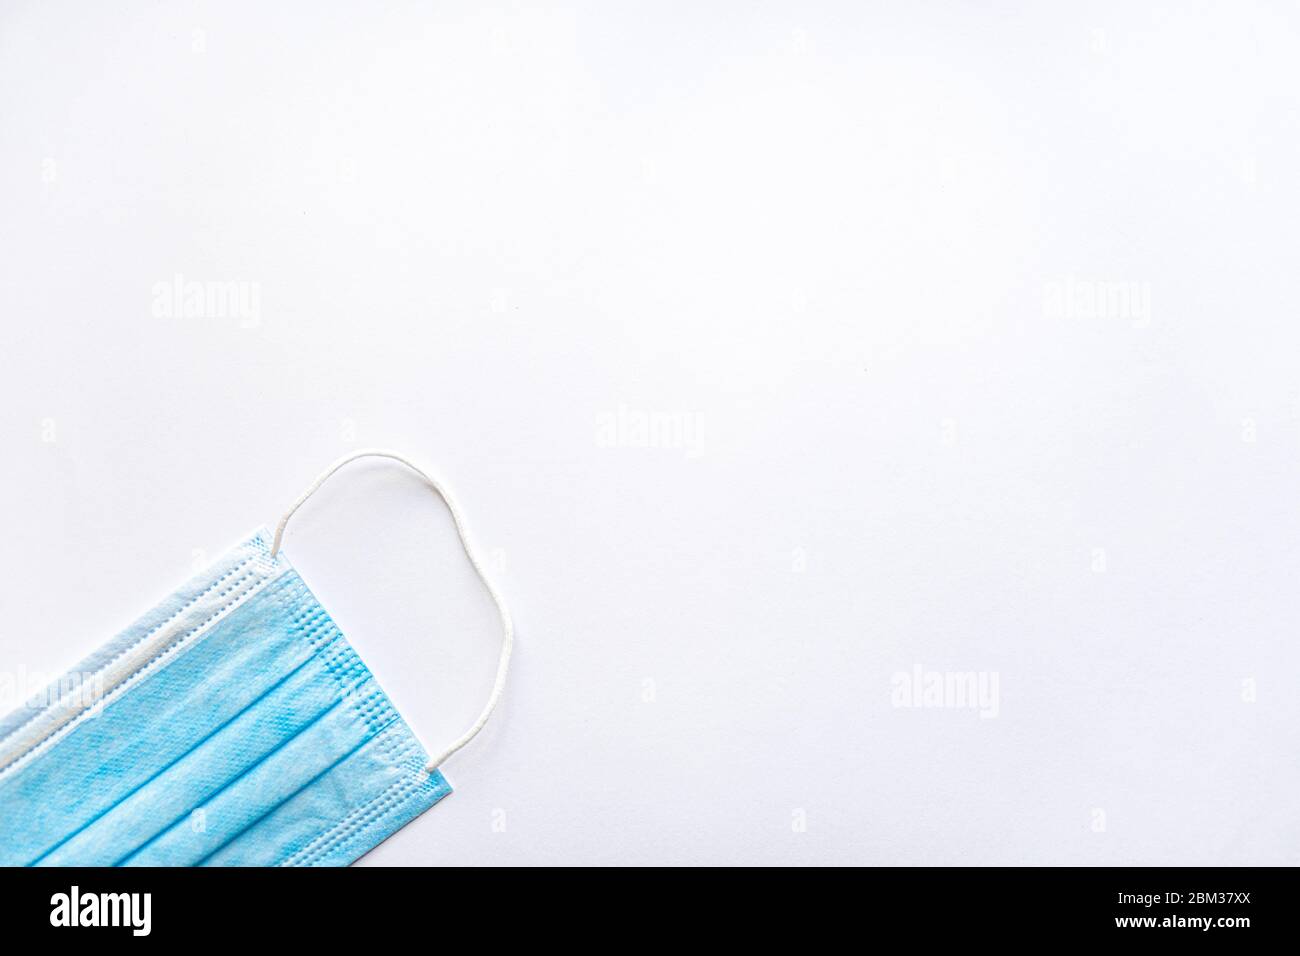 Maschera protettiva monouso blu per uso medico su uno spazio di copia su sfondo bianco. Una medicazione chirurgica chiude la bocca e il naso. Sanità, medicina, covid Foto Stock